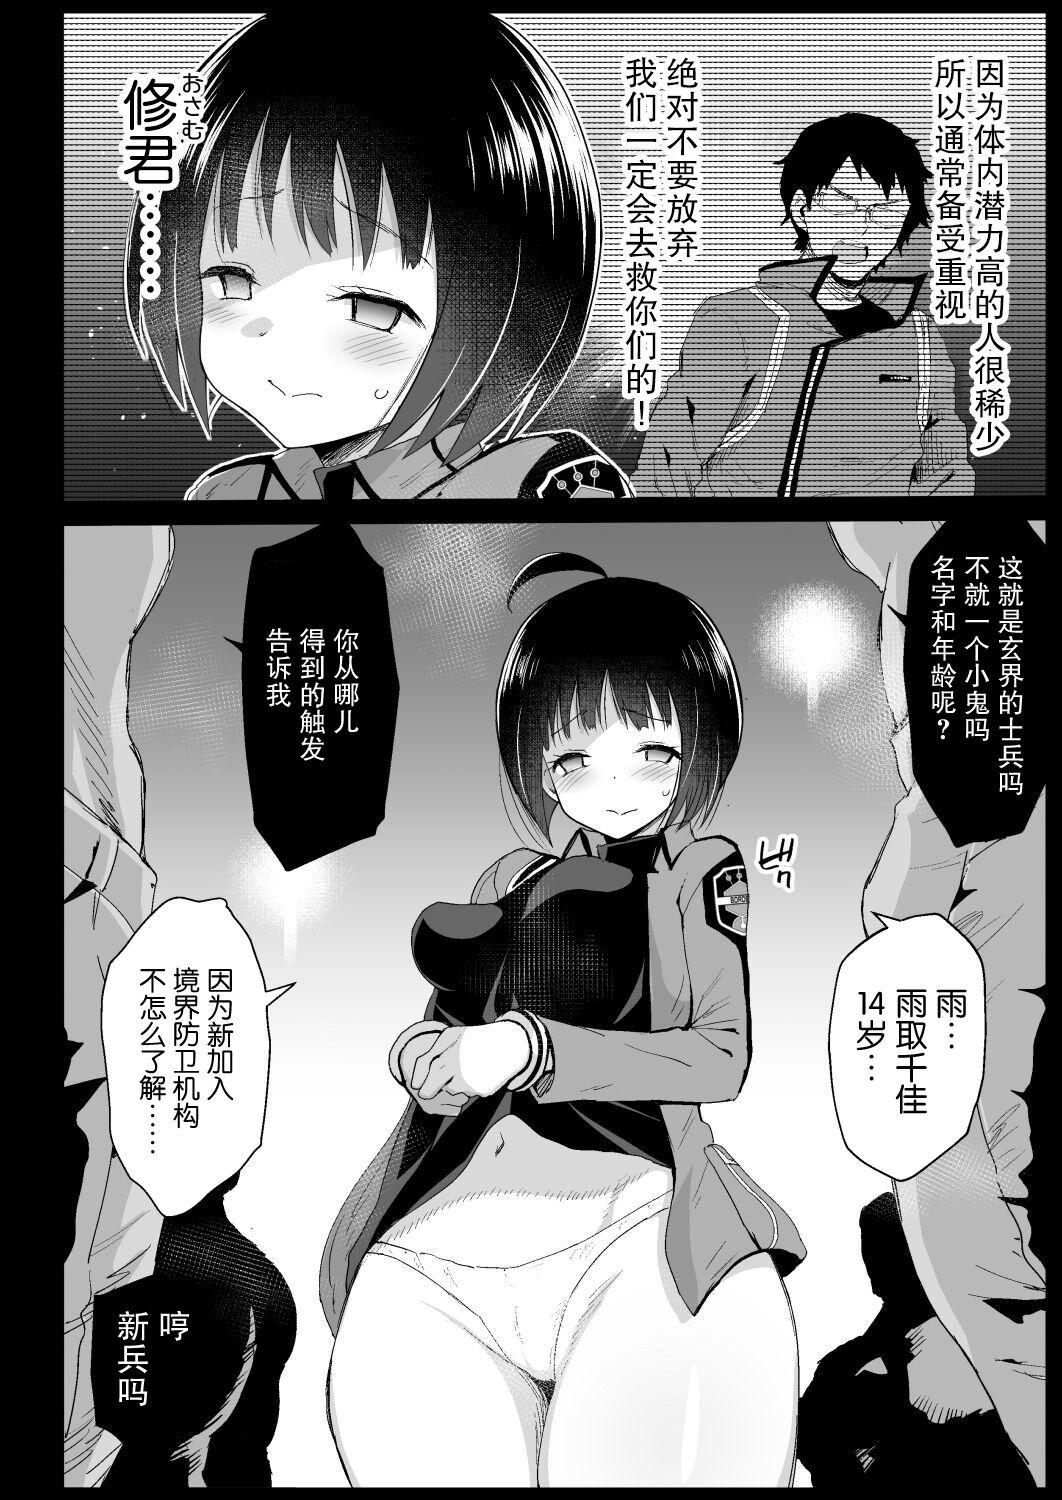 Foreplay Amatori Chika 14 Sai Warui Ossan ni Okasareru! - World trigger Bear - Page 5